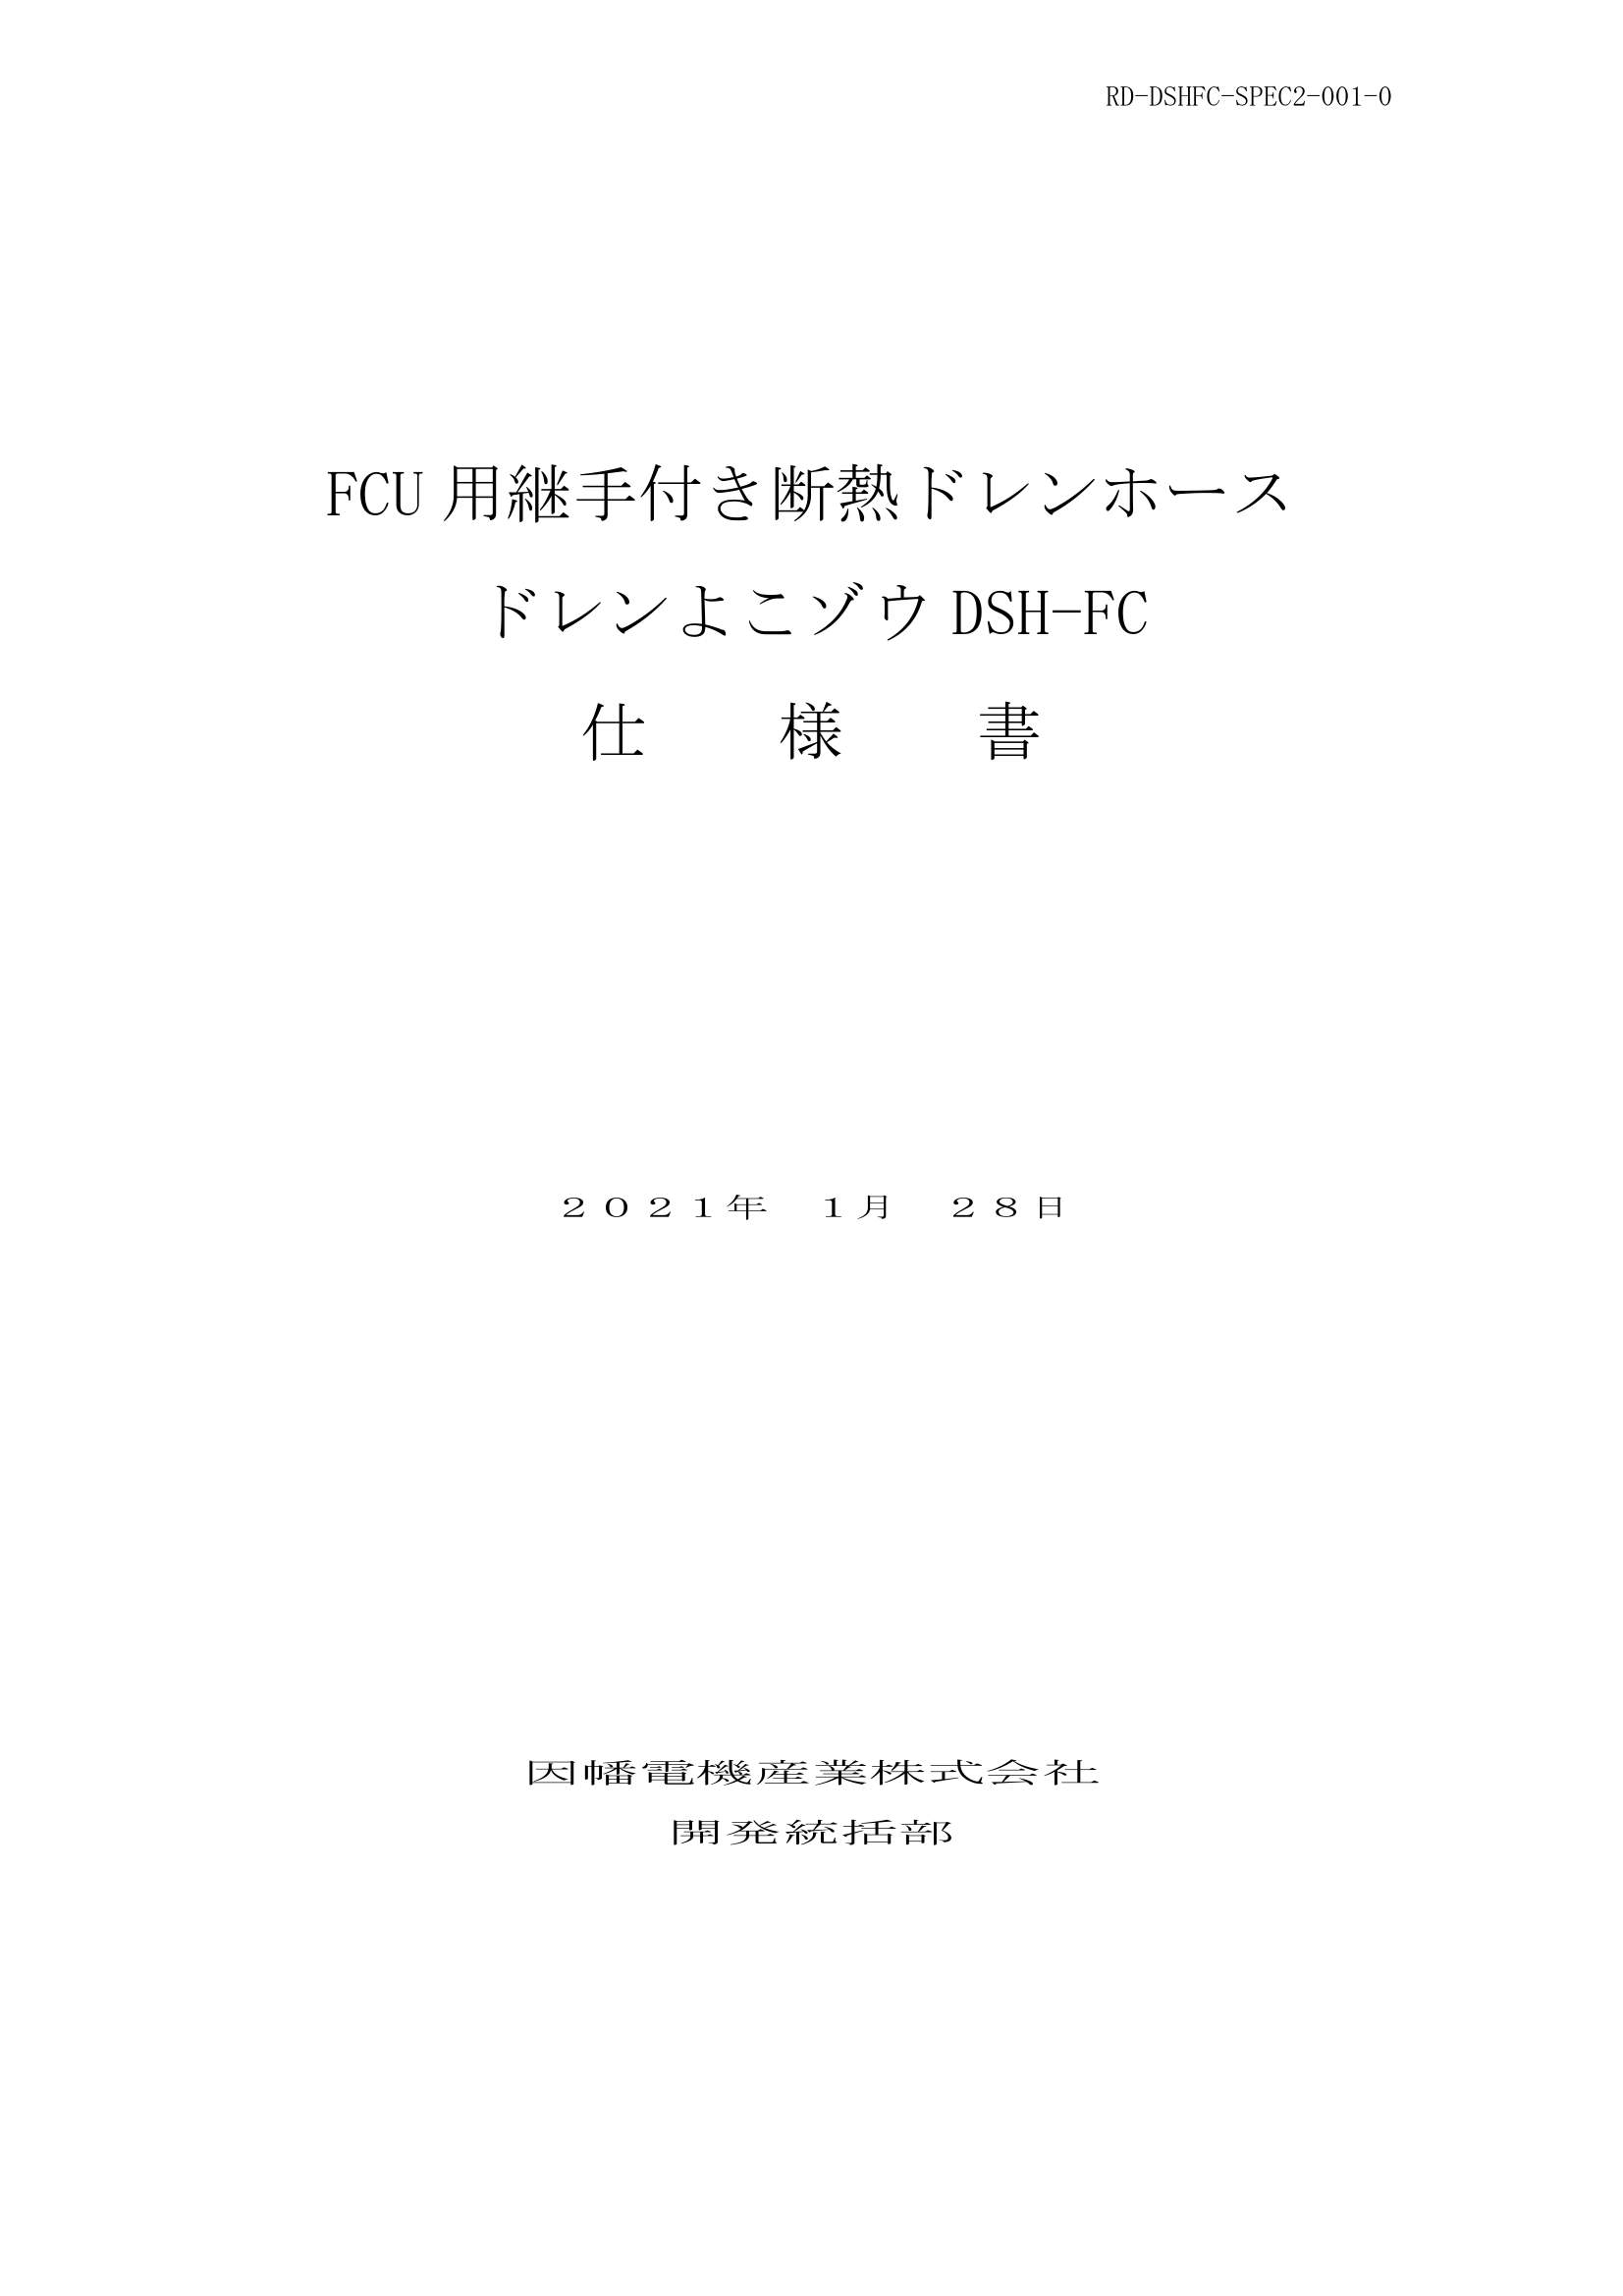 DSH-FC_仕様書_20210128.pdf